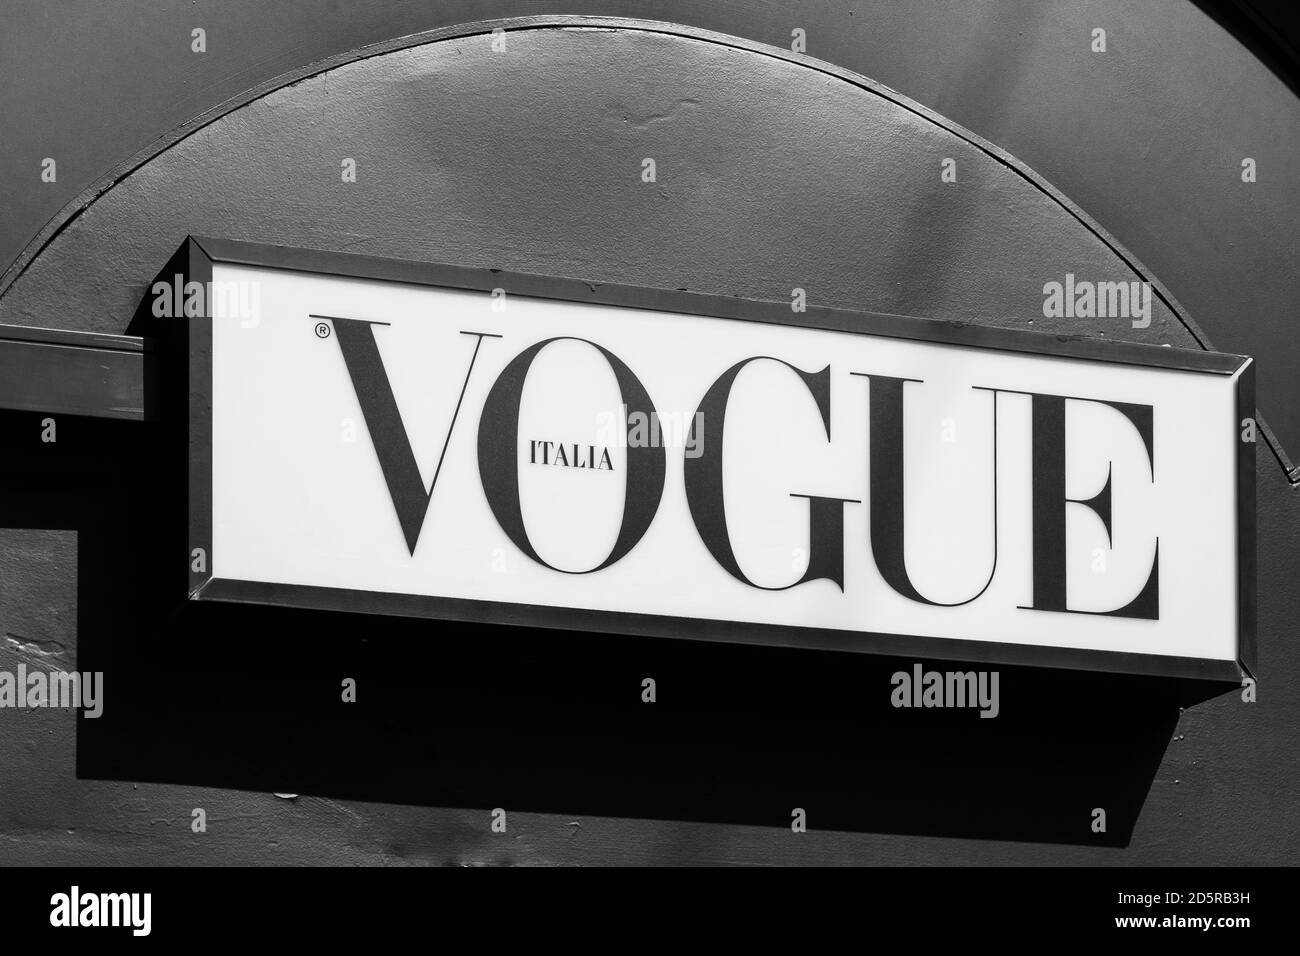 Logo de la marque Vogue sur un kiosque à journaux. Vogue est un magazine mensuel de mode et de style de vie couvrant de nombreux sujets, y compris la mode, la beauté, la culture Banque D'Images